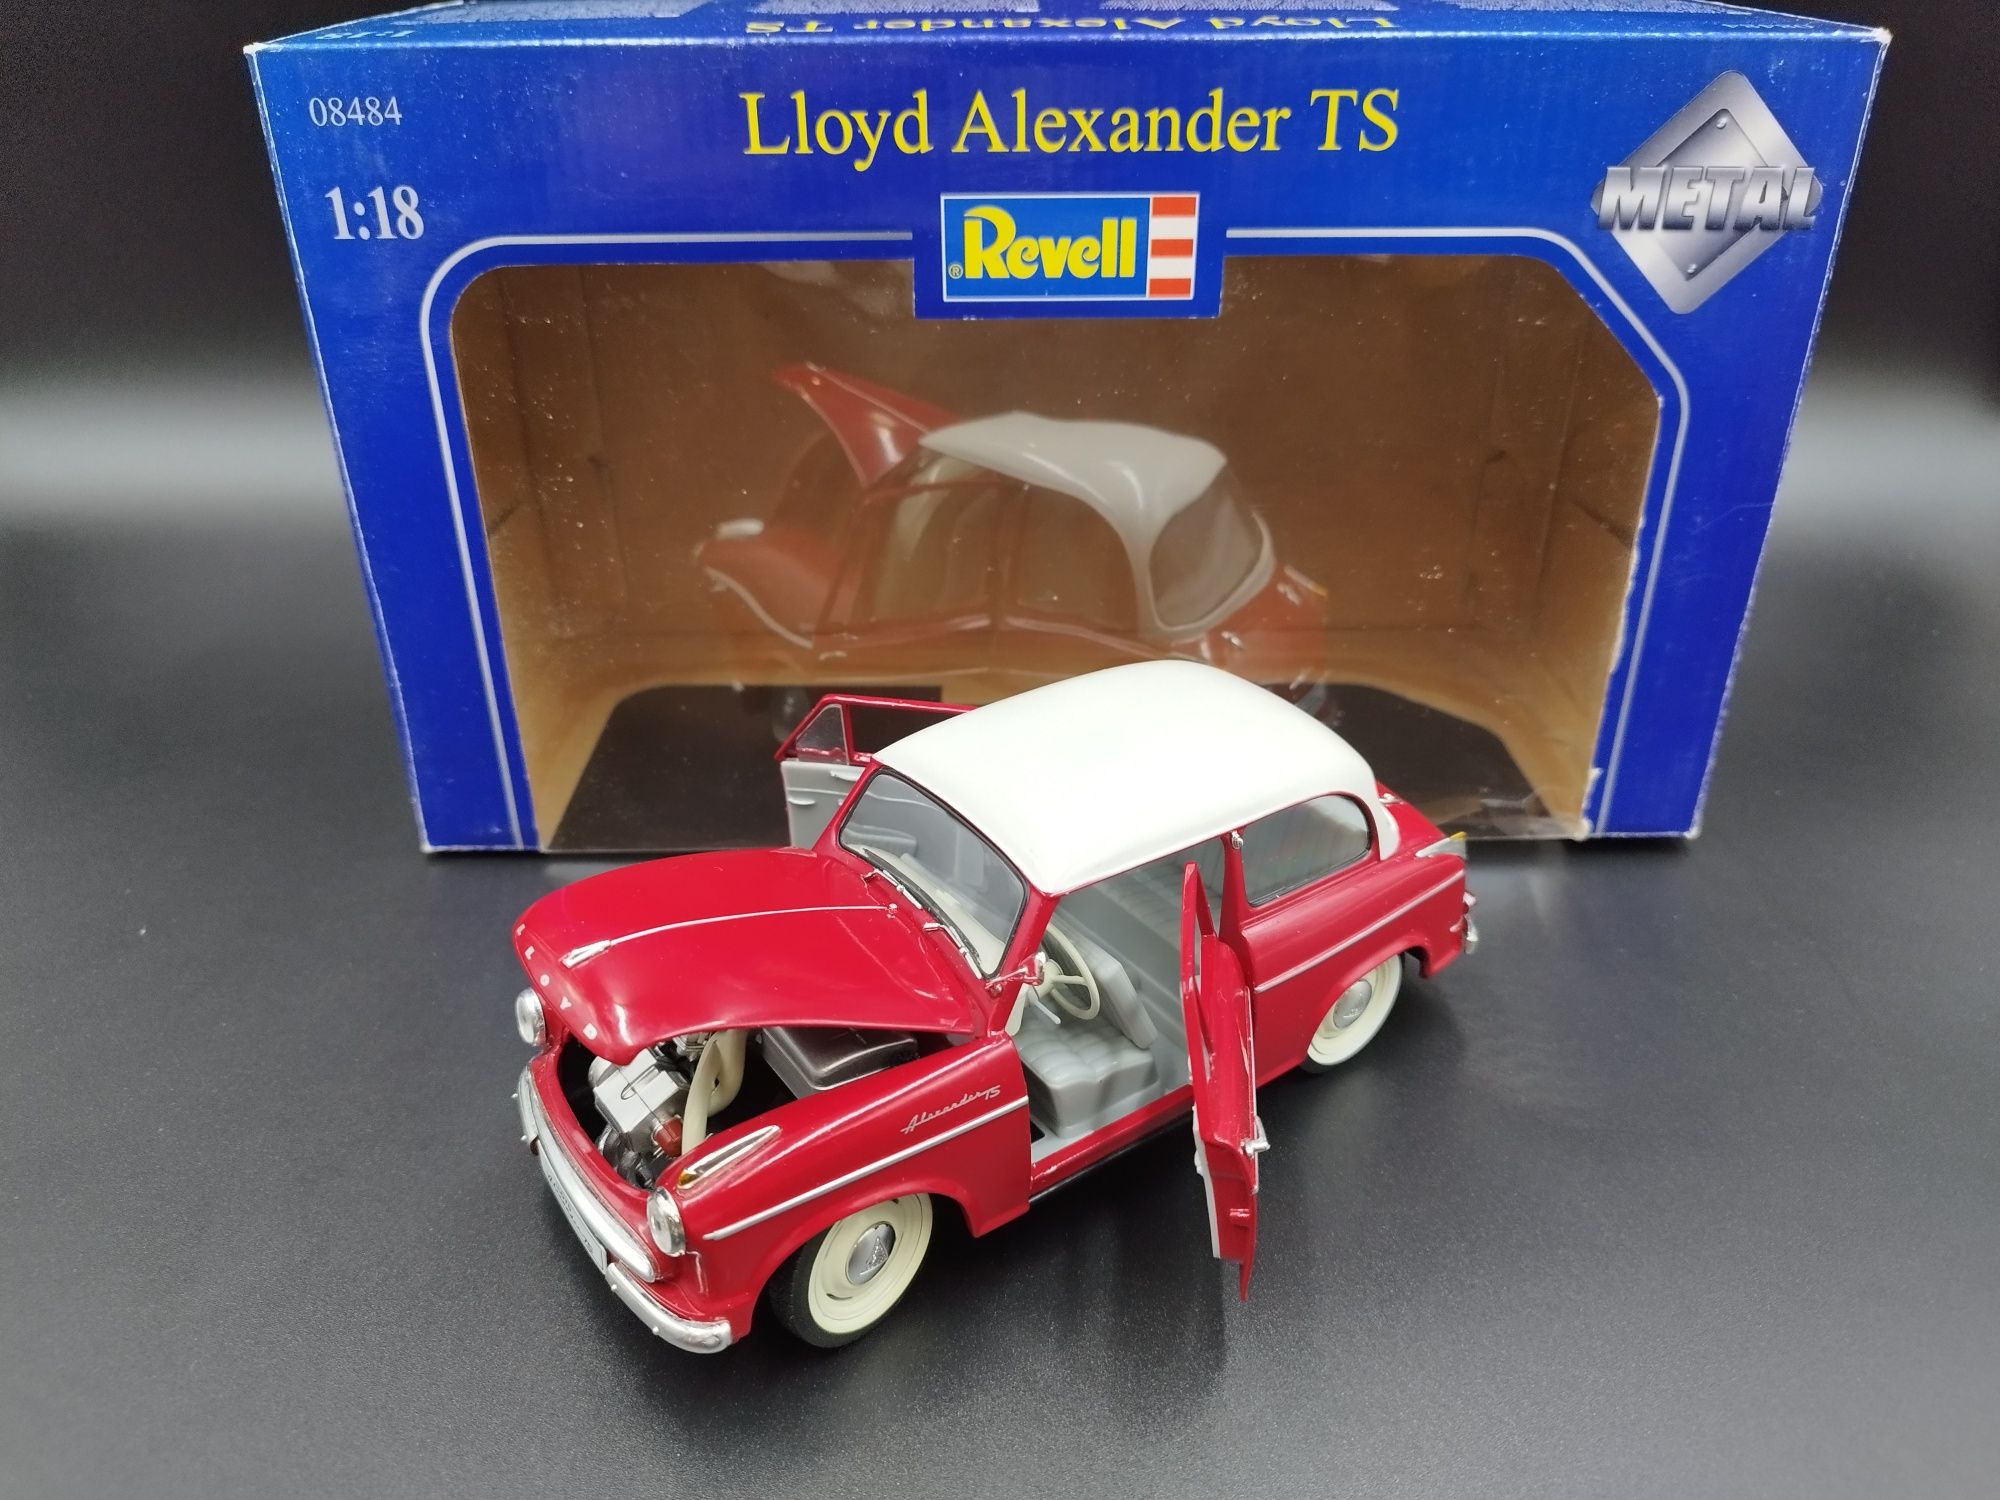 1:18 Revell Lloyd Aleksander TS model